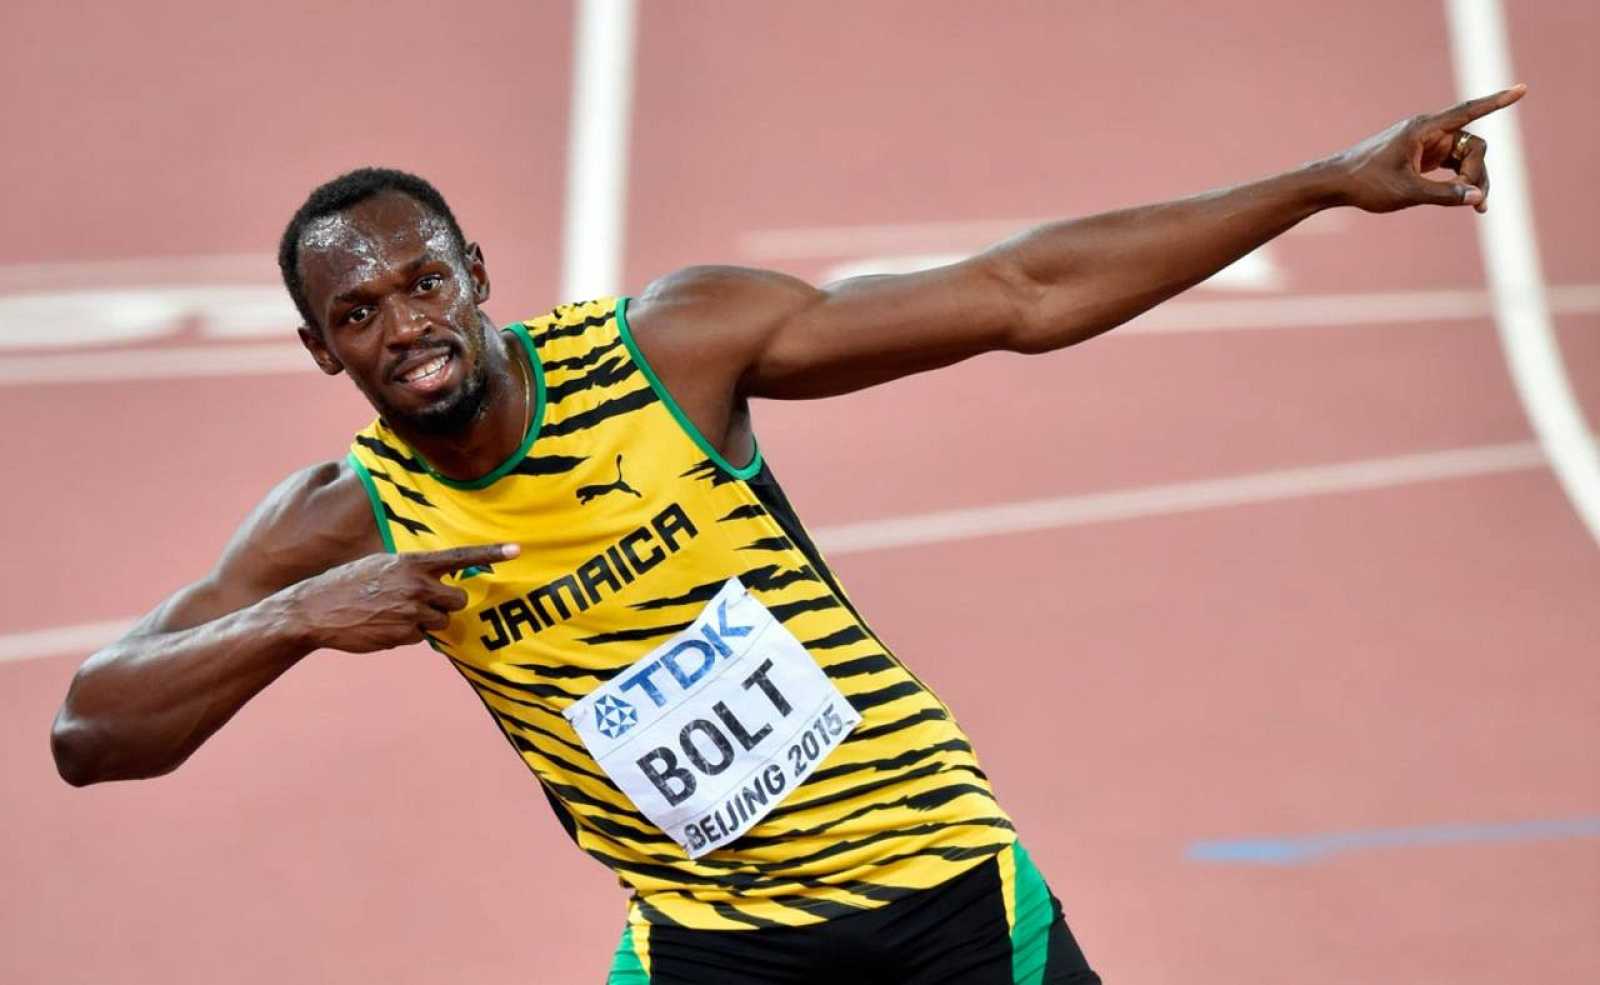 Biografía de Usain Bolt y sus comienzos